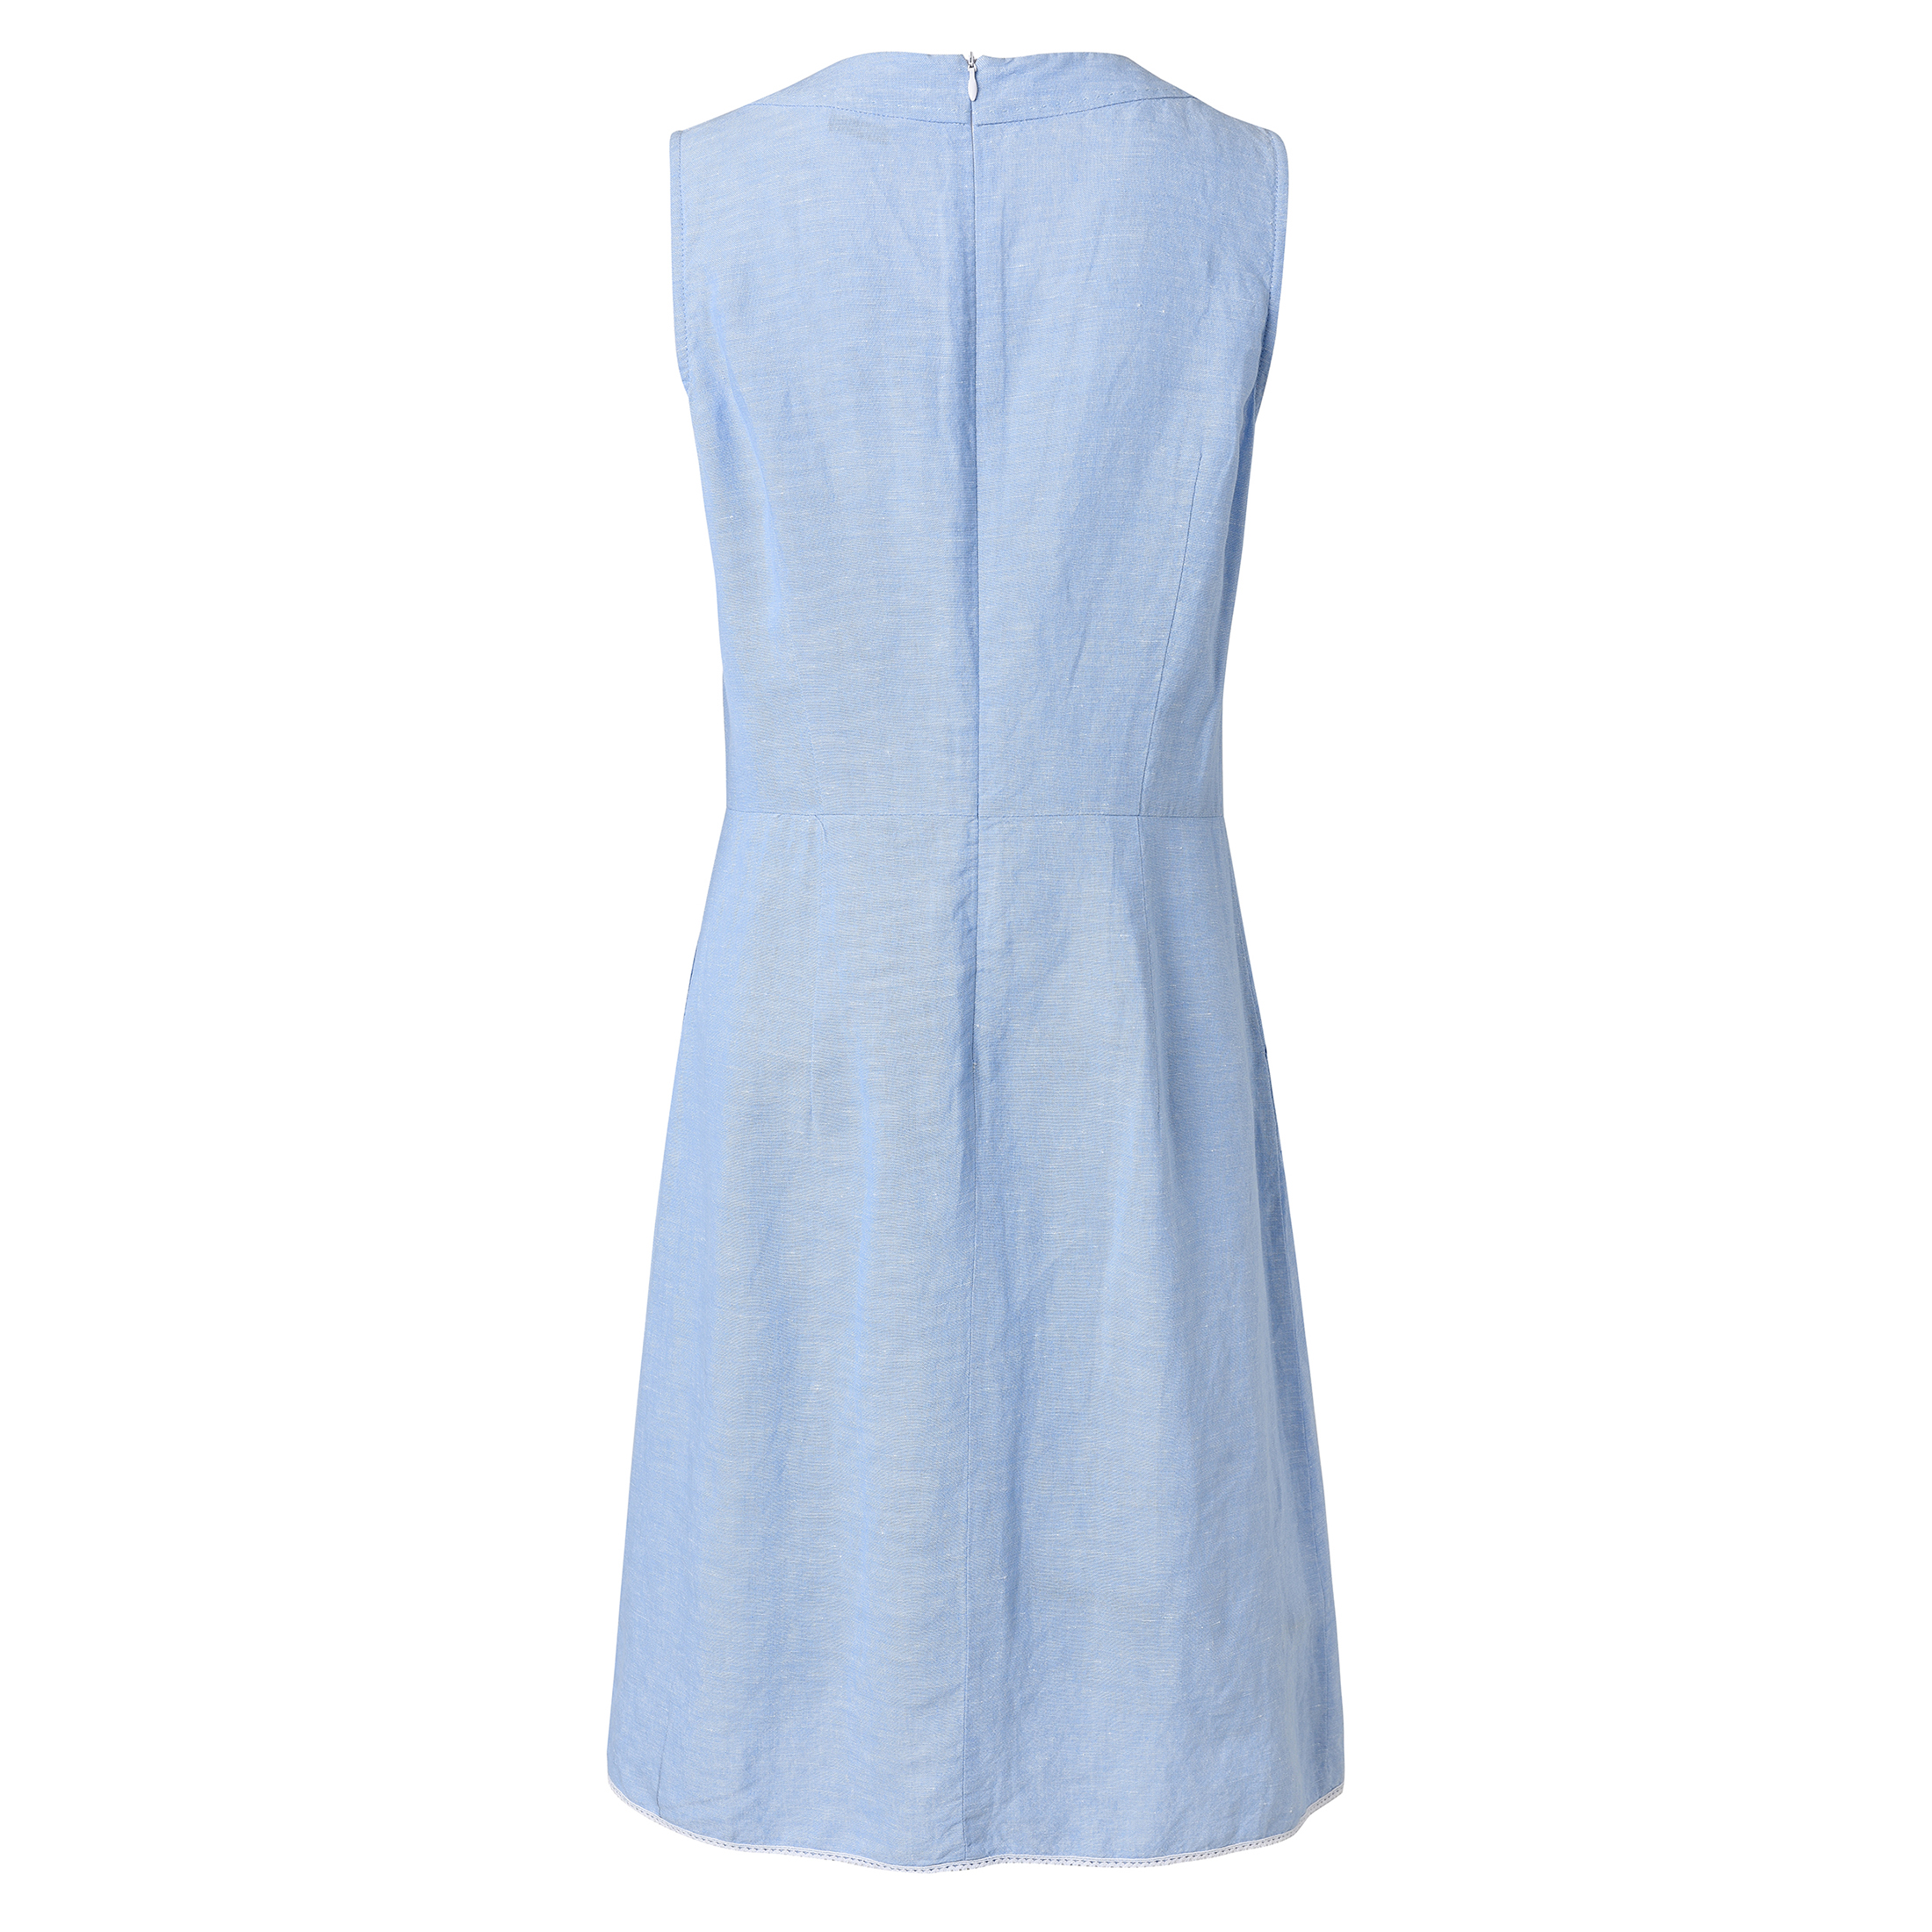 Woman's Dress - New Women's Long Linen Dress - Summer Dress